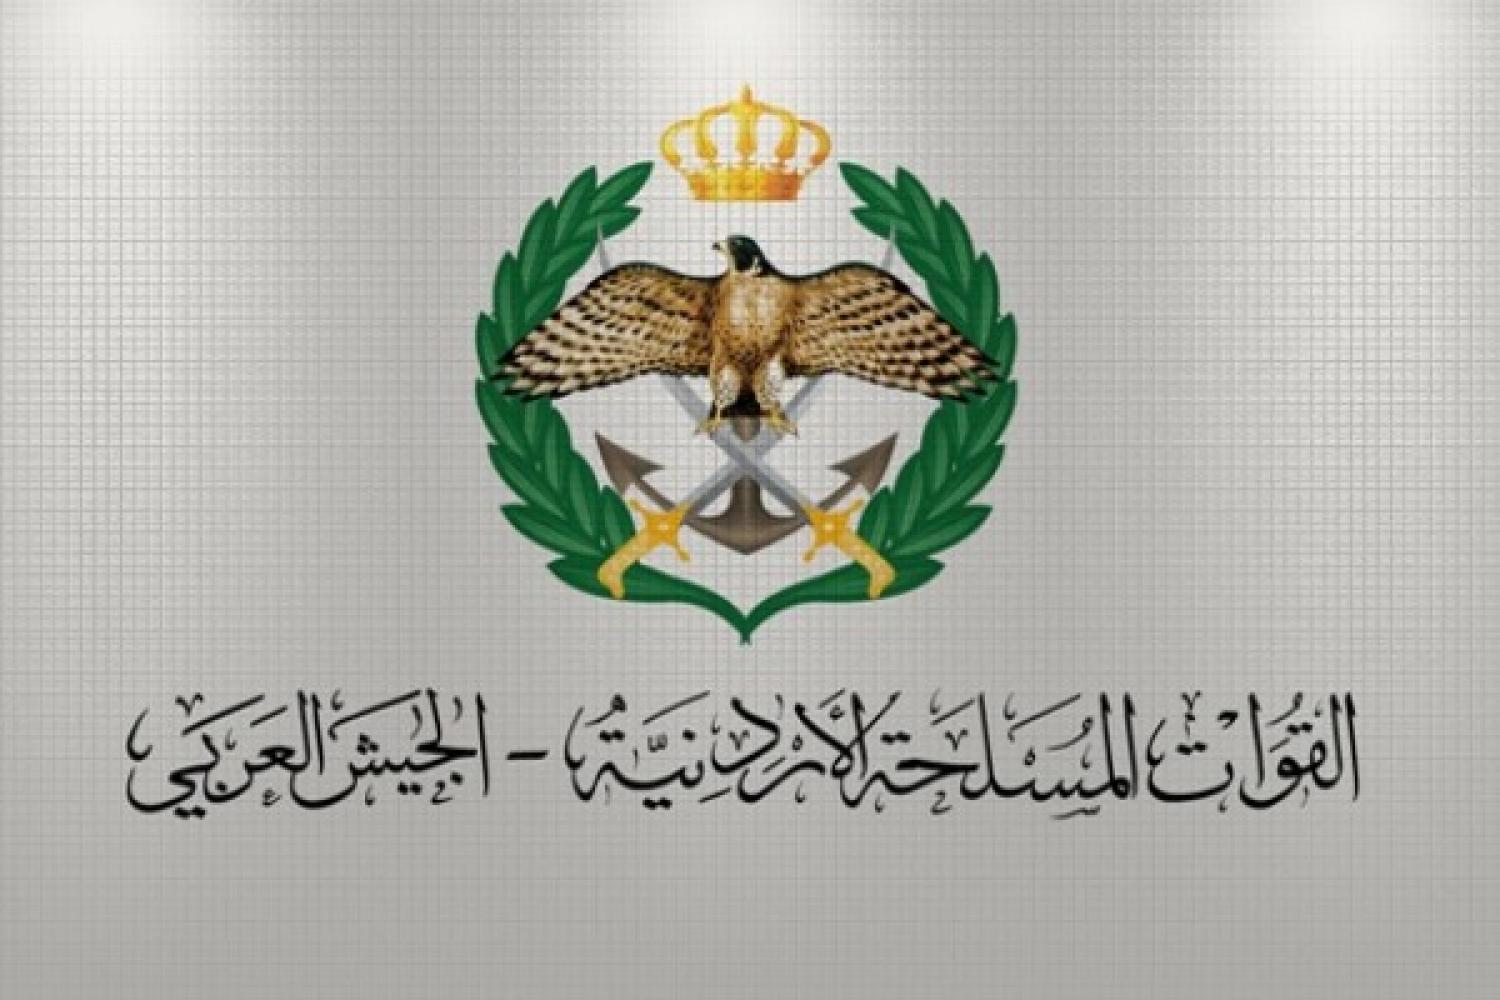 القوات المسلحة تعلن ’مناقلات الجامعات‘ لطلبة المكرمة (أسماء)